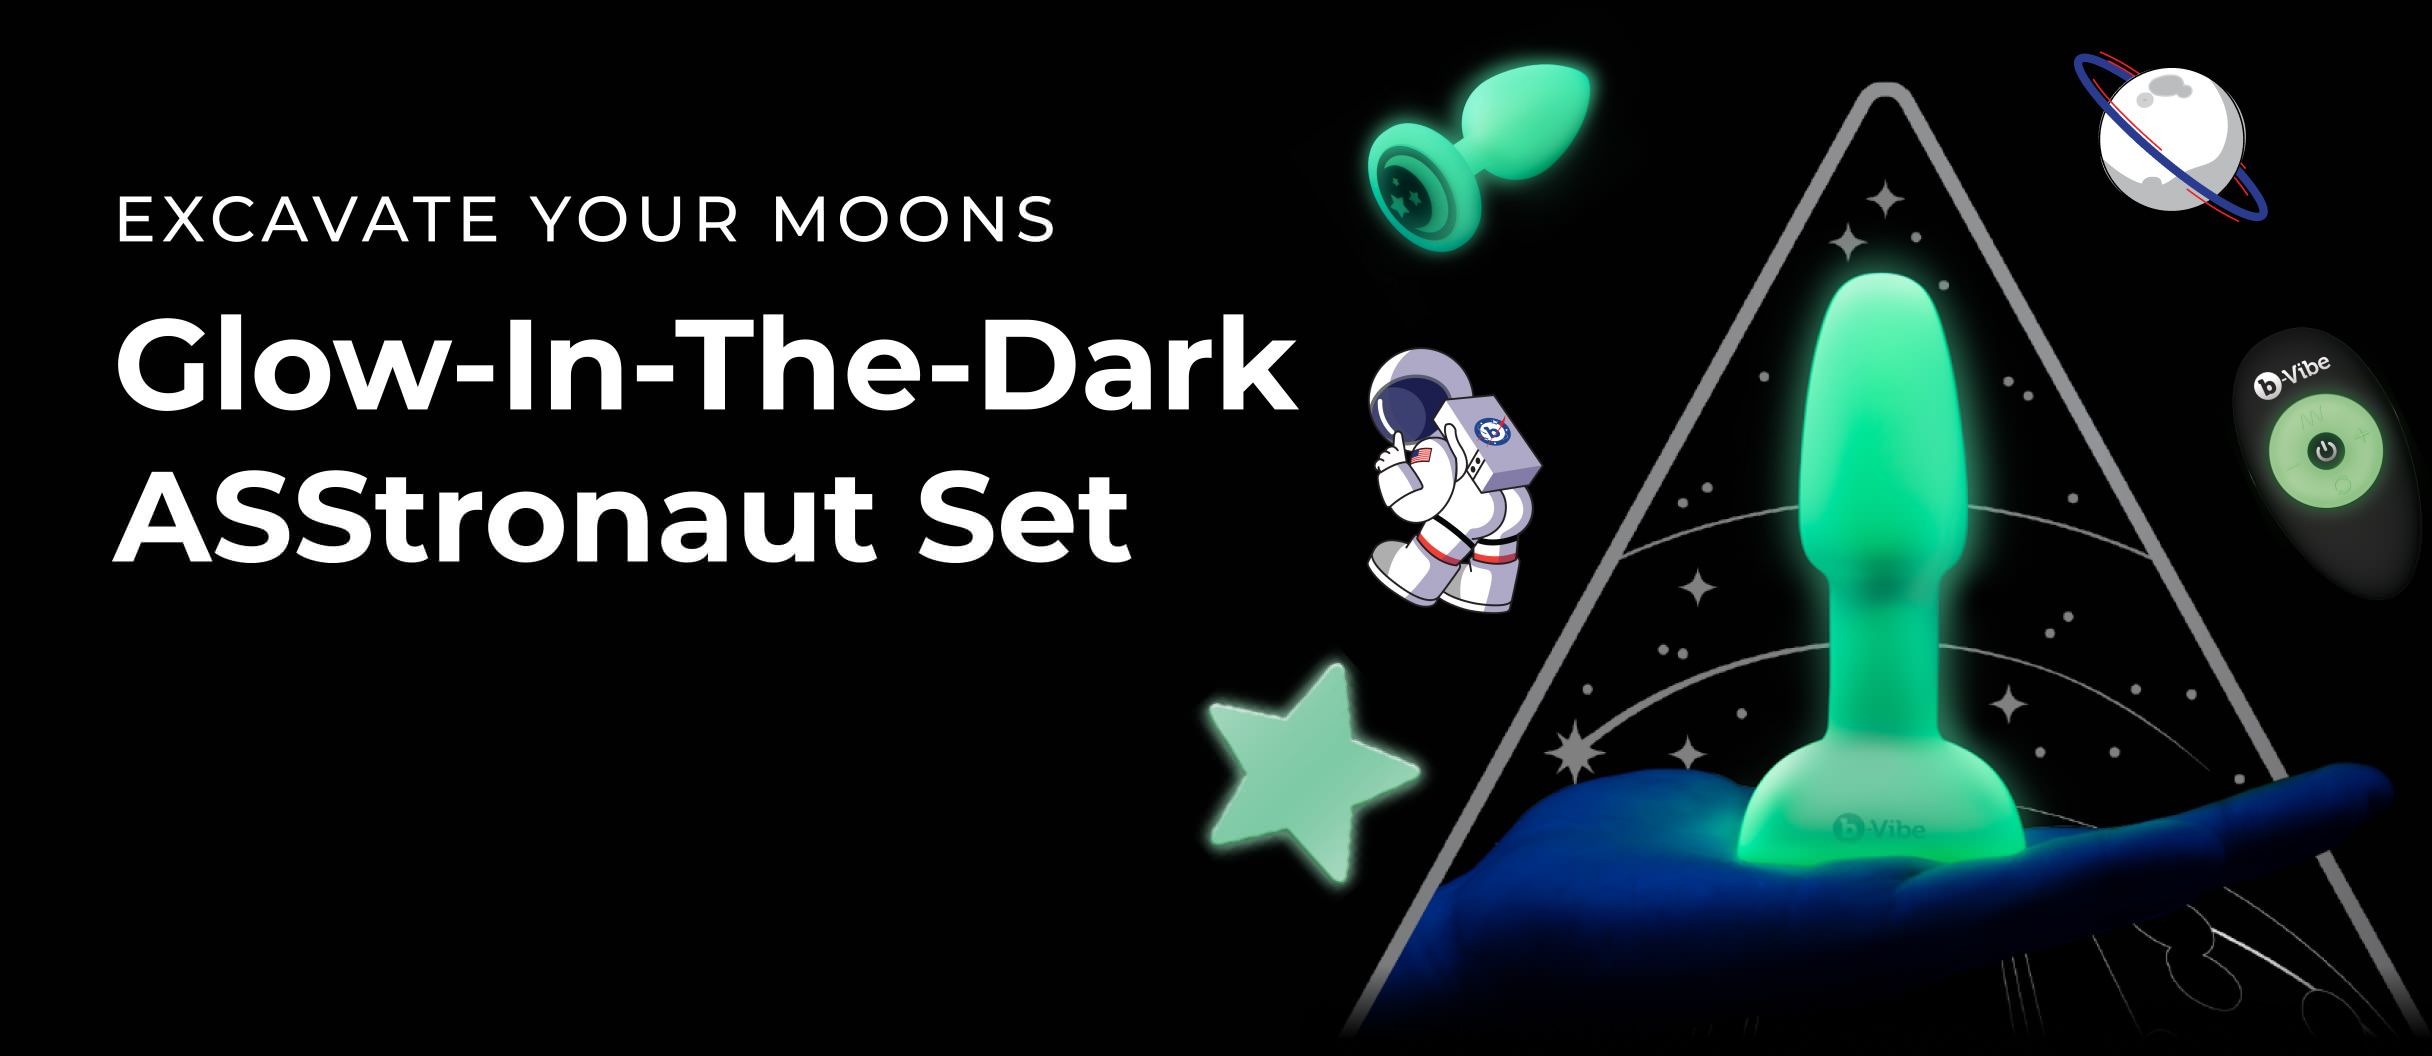 asstronaut glow-in-the-dark butt play set